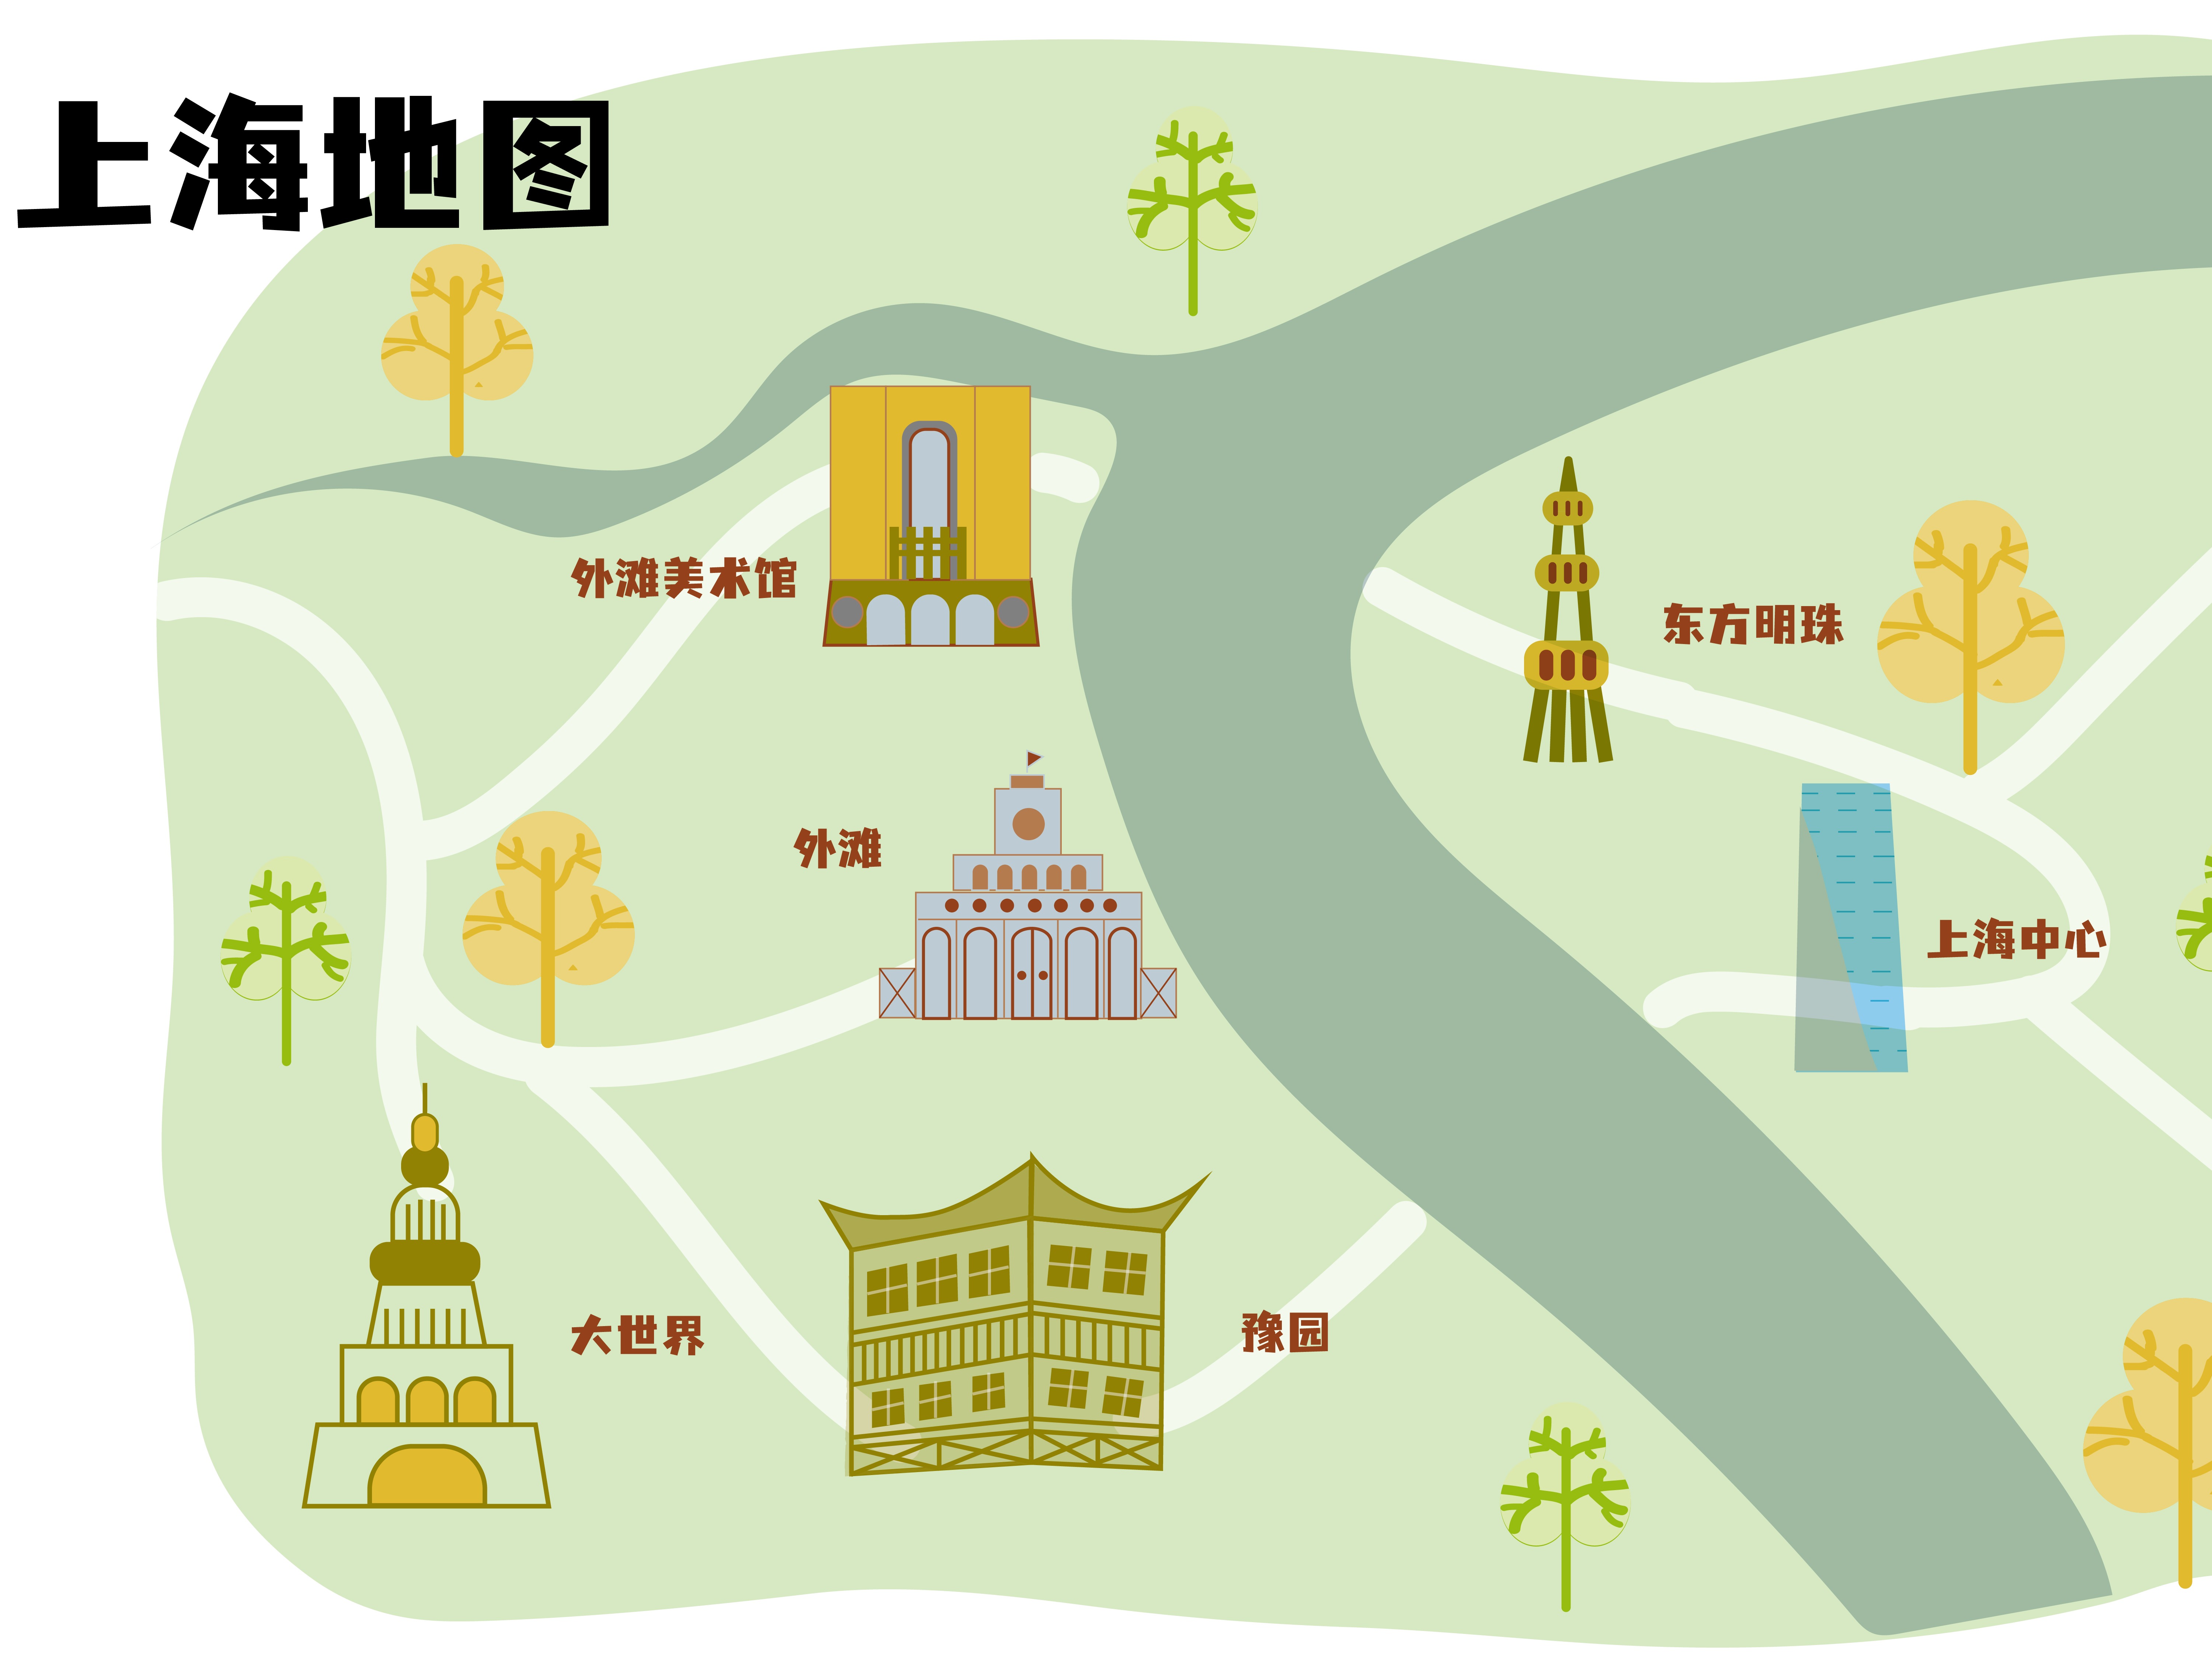 上海地图【东方明珠上海中心外滩美术馆豫园大世界】